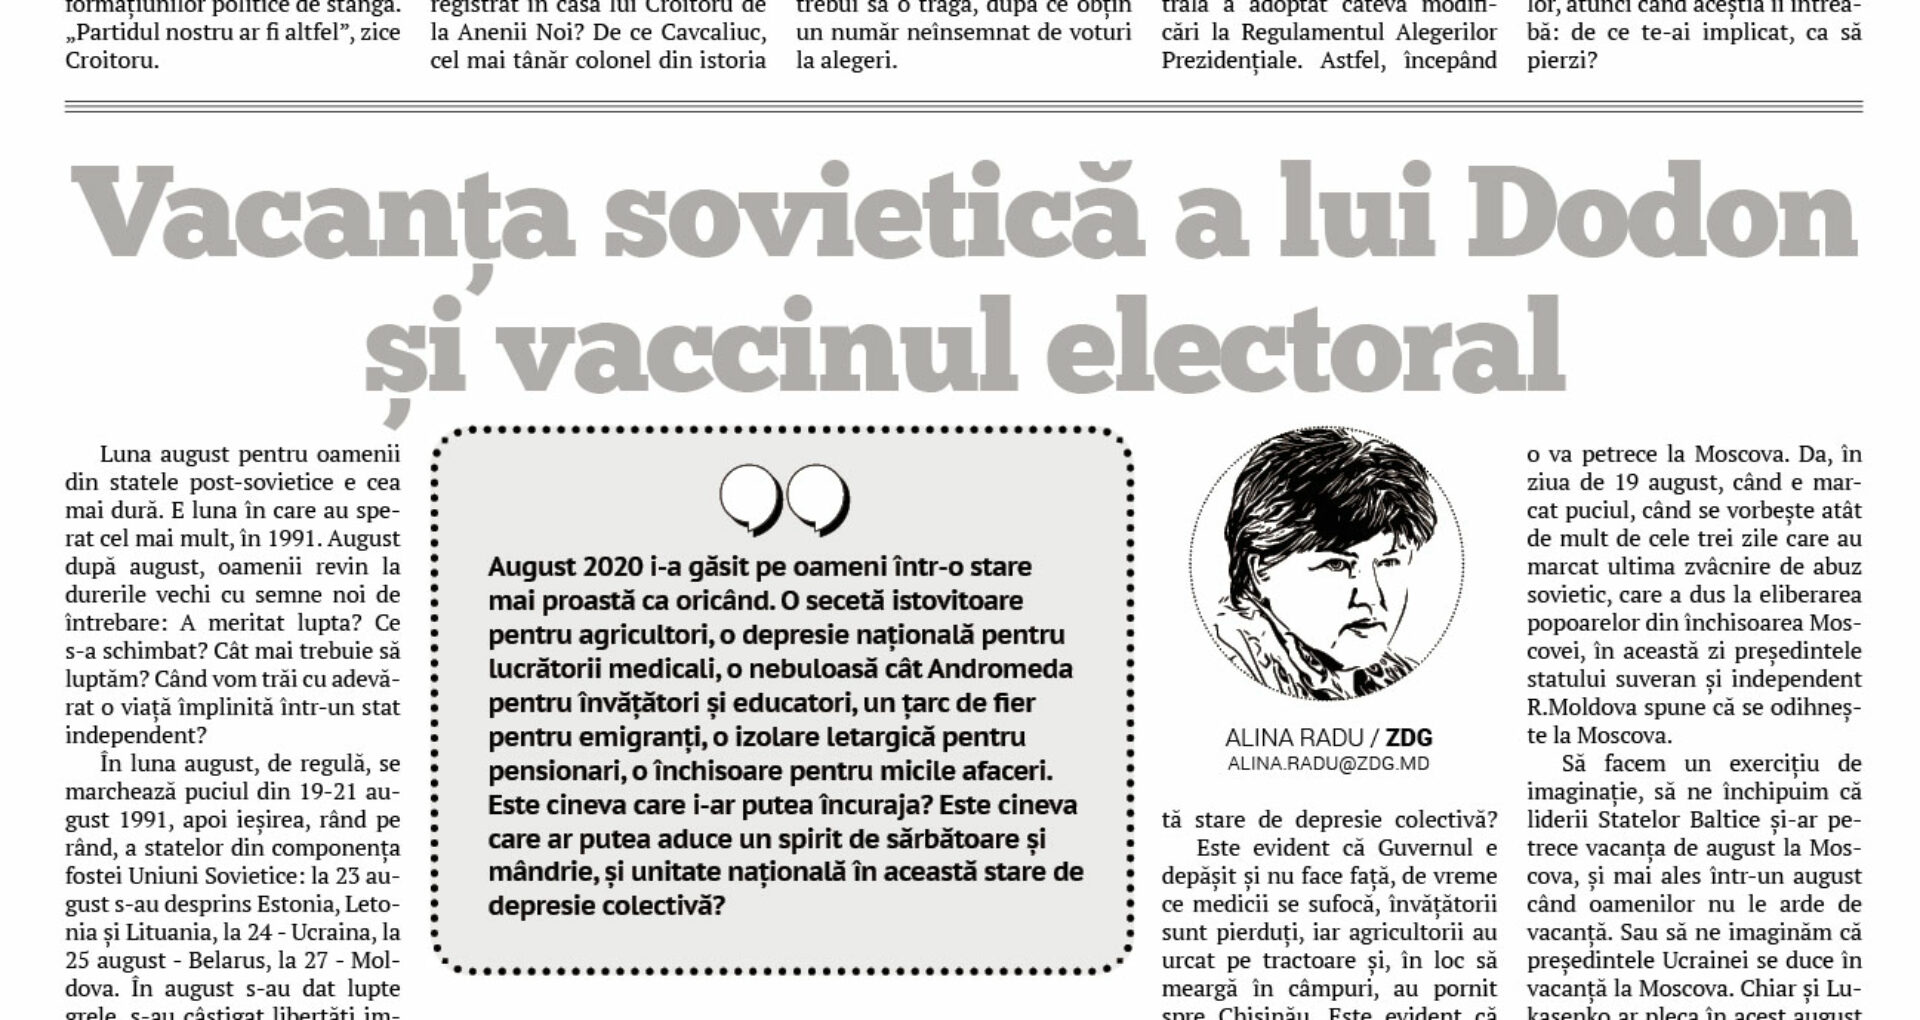 Vacanța sovietică a lui Dodon și vaccinul electoral